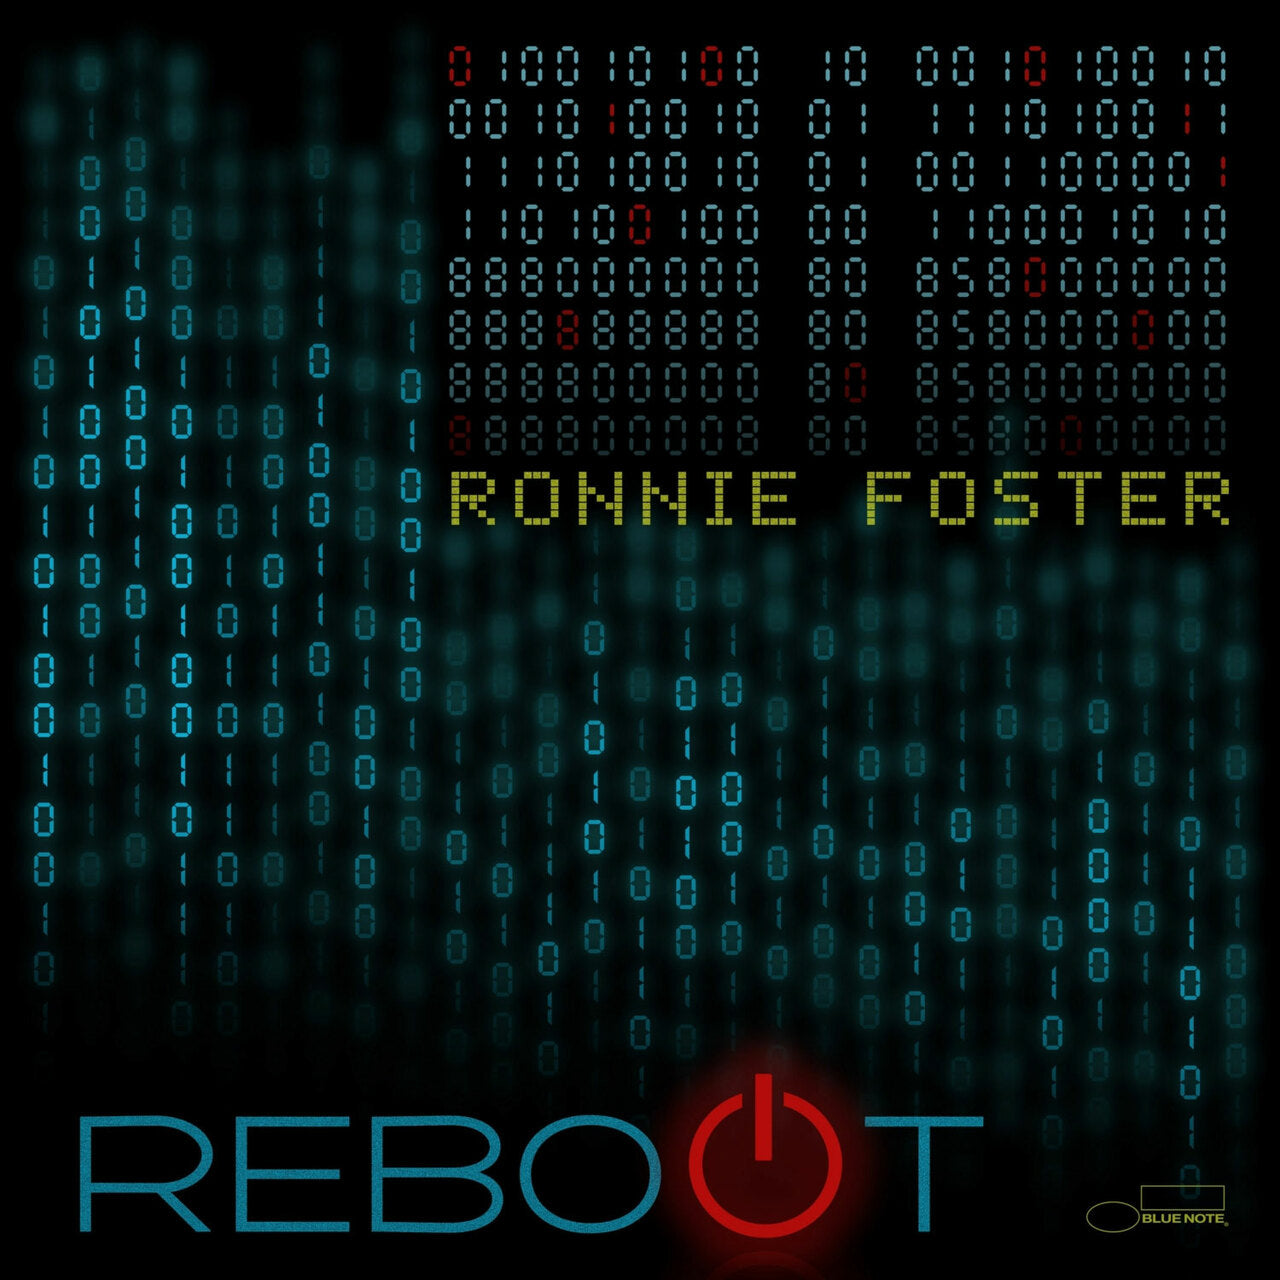 Ronnie Foster - Reboot - LP